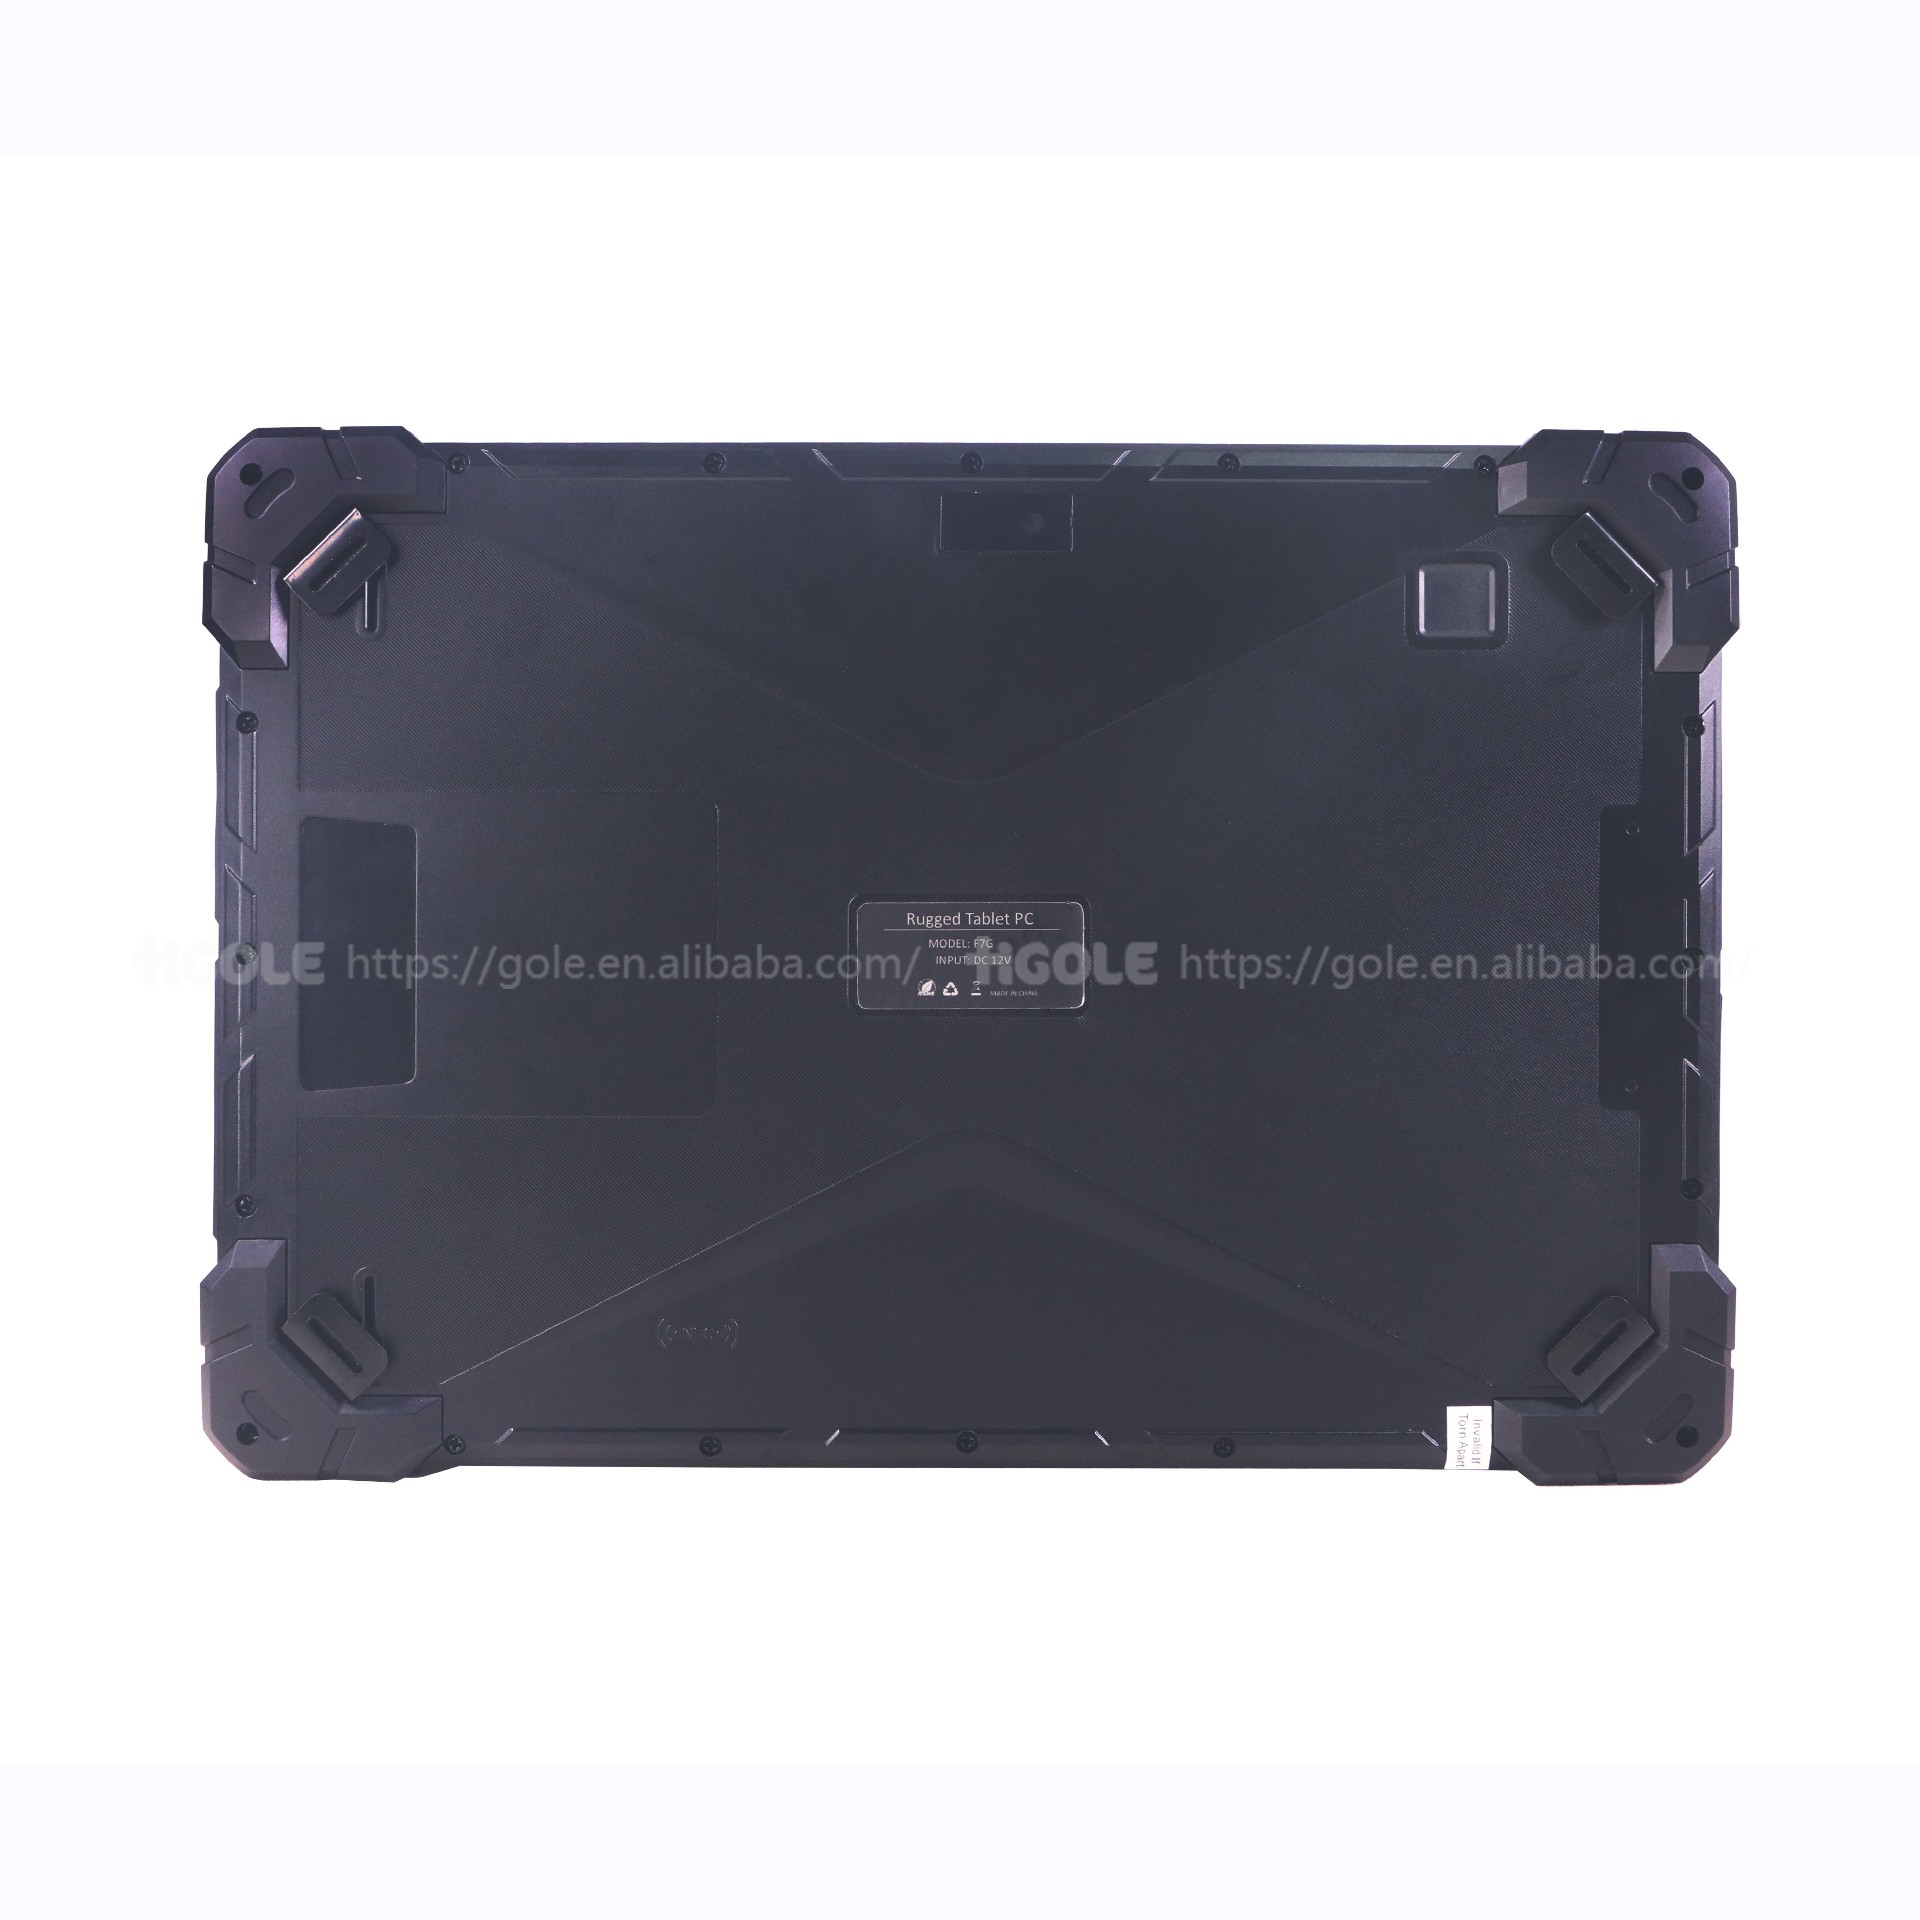 IP67 Waterproof Rugged Industrial Tablet